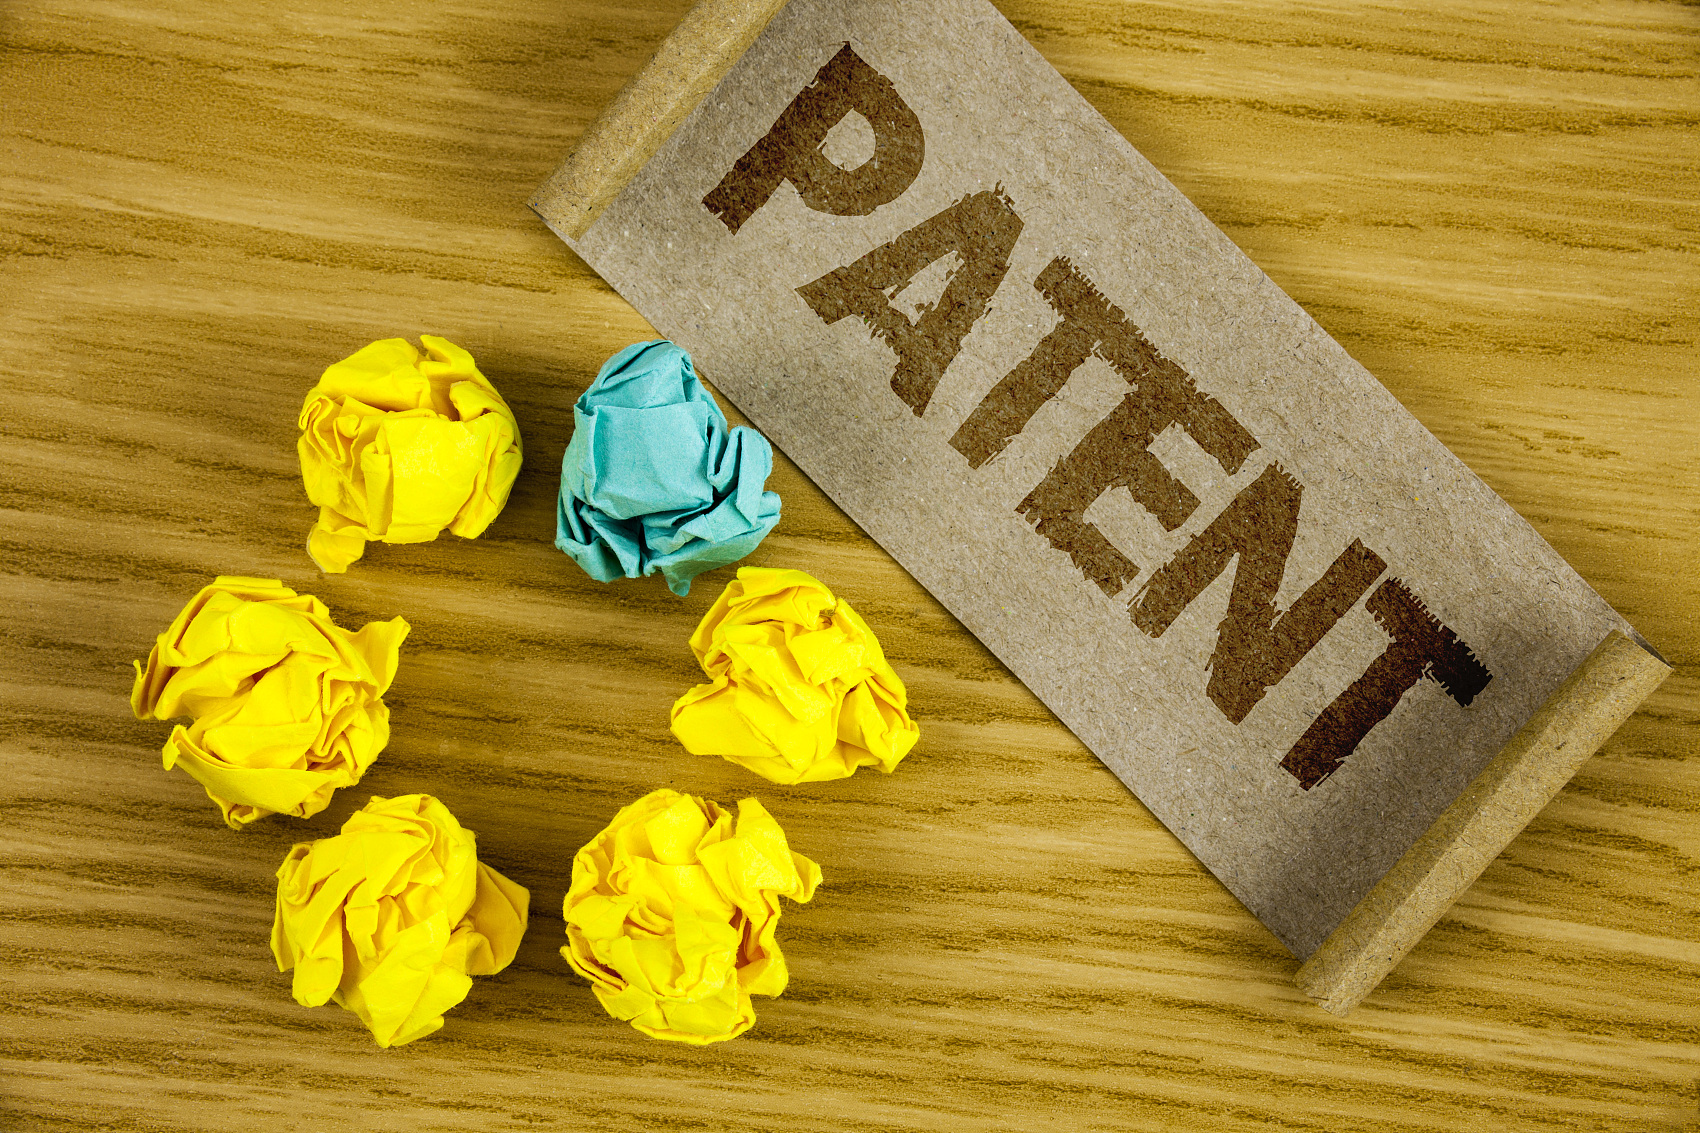 同一产品侵犯多个专利权，原告怎么主张赔偿数字？